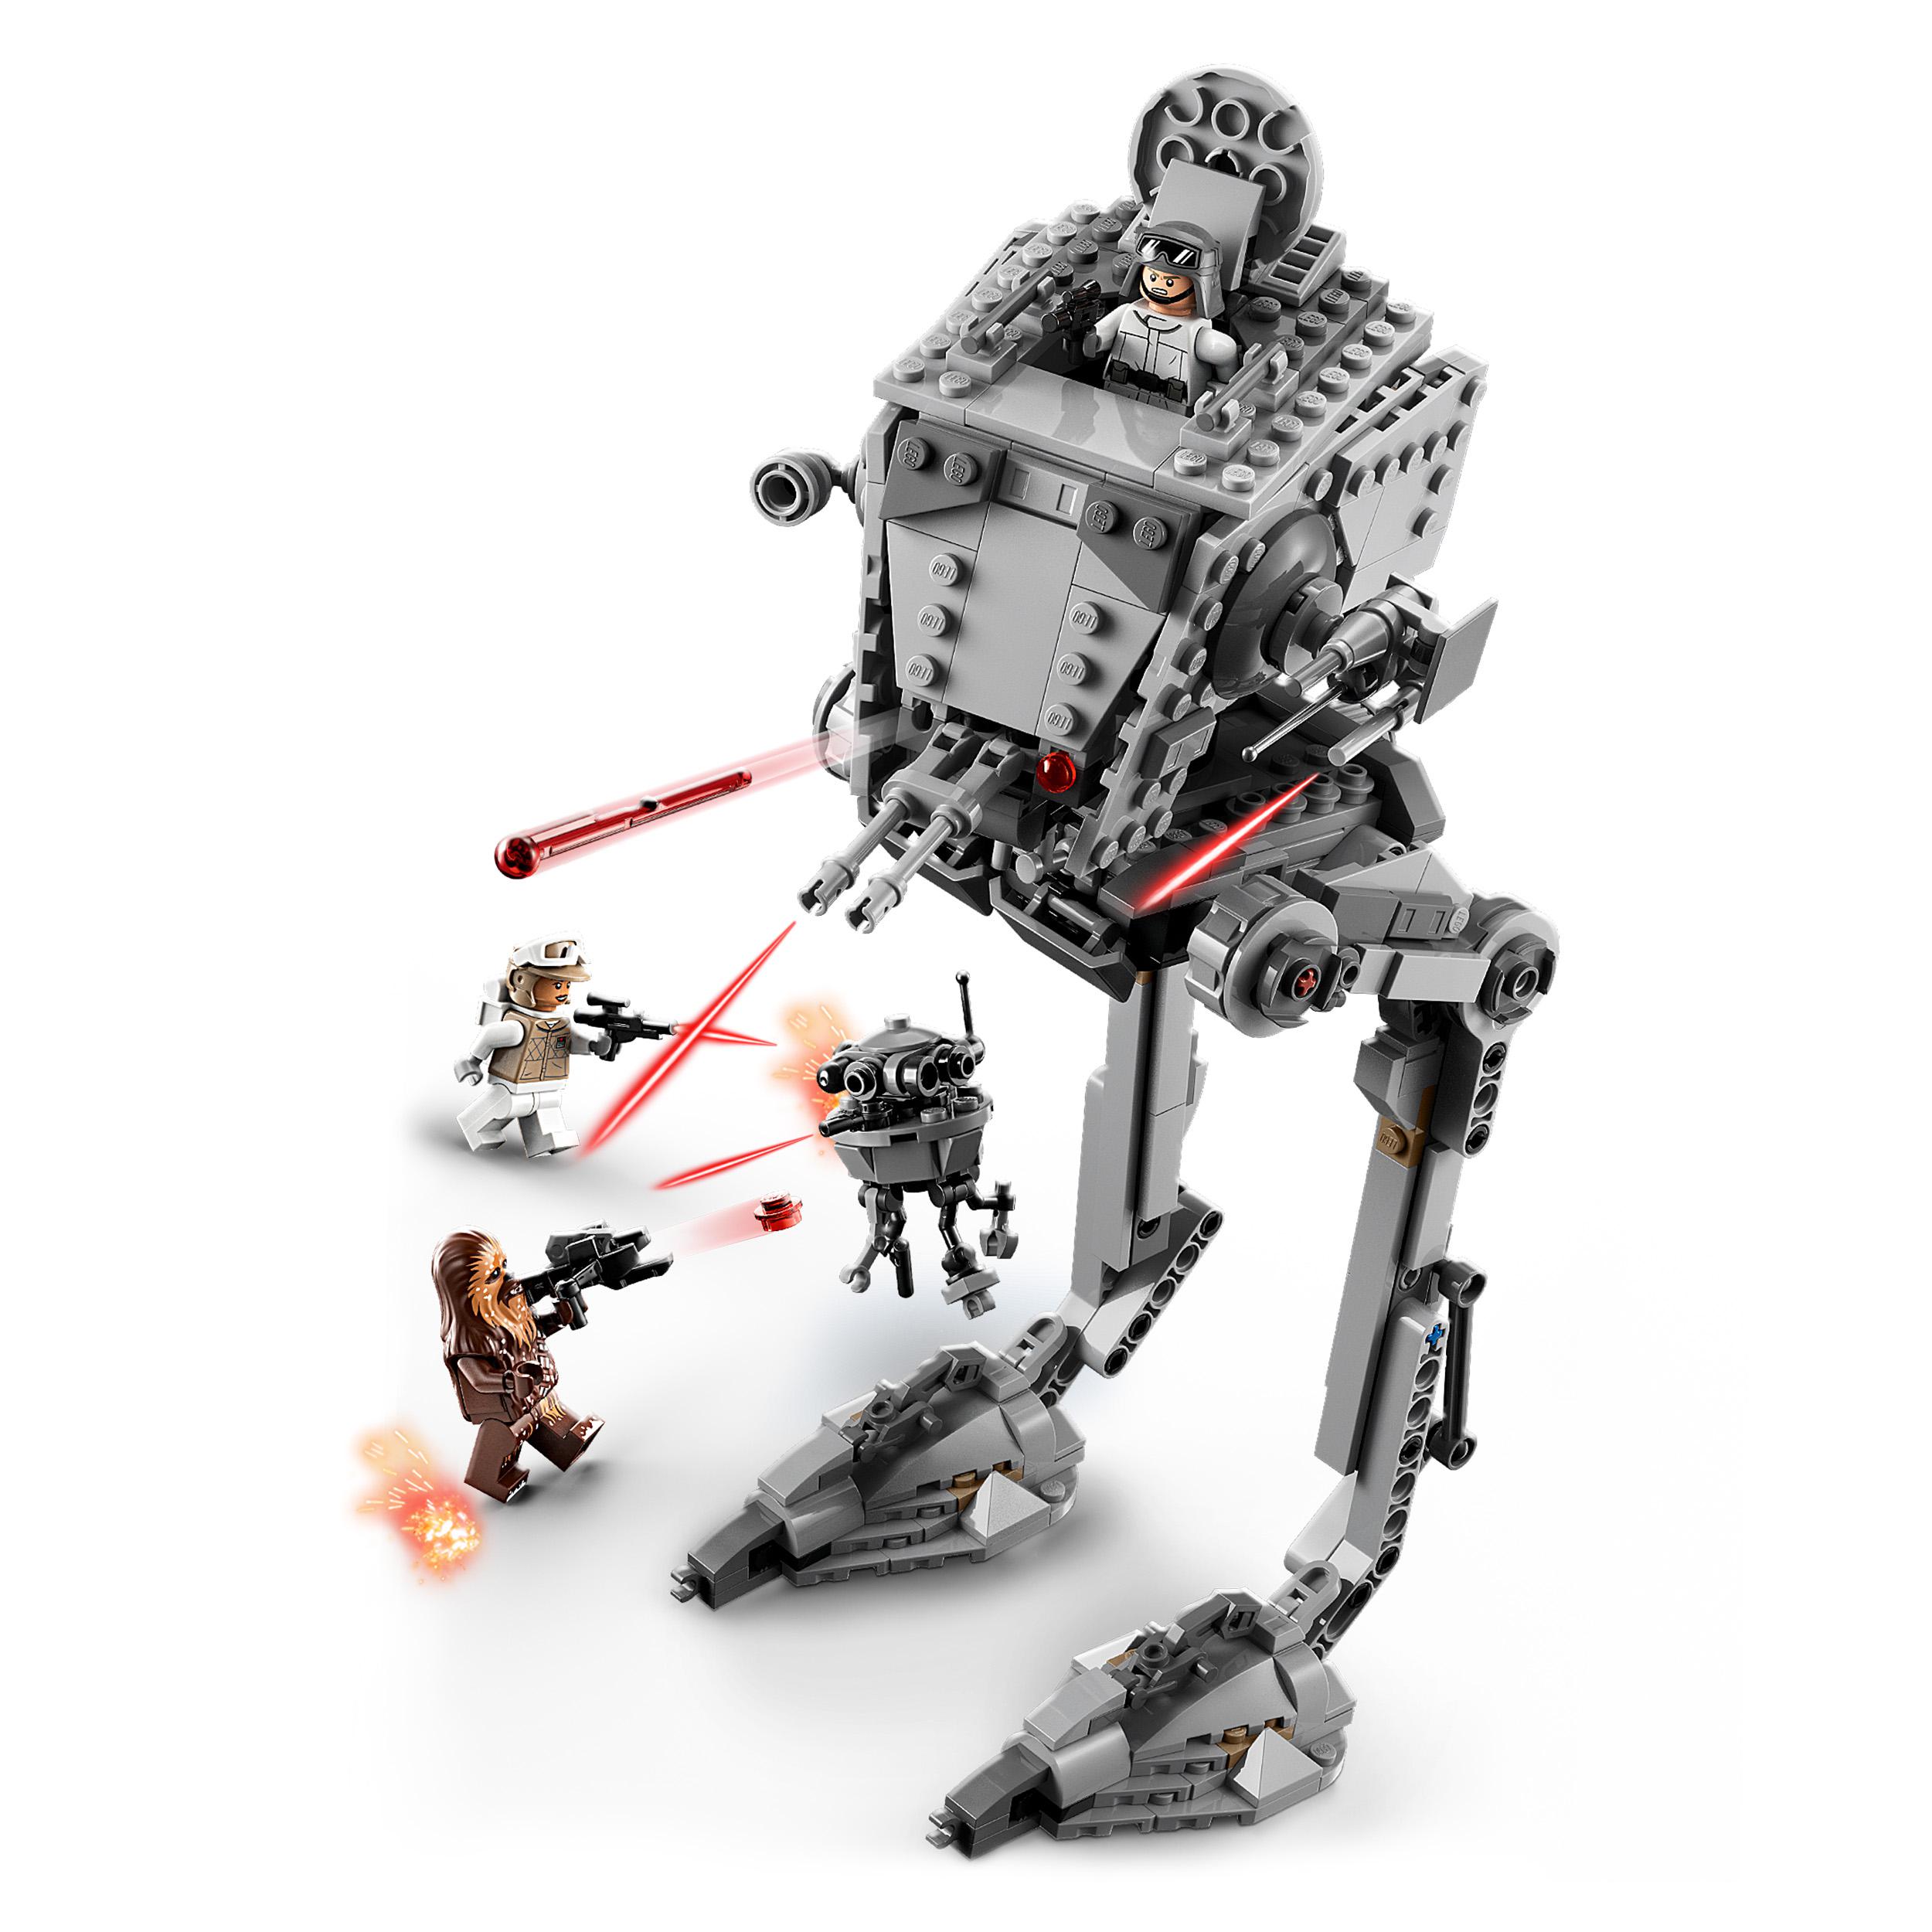 LEGO Star Wars AT-ST di Hoth con Minifigure di Chewbacca e Droide, Modellino del 75322, , large